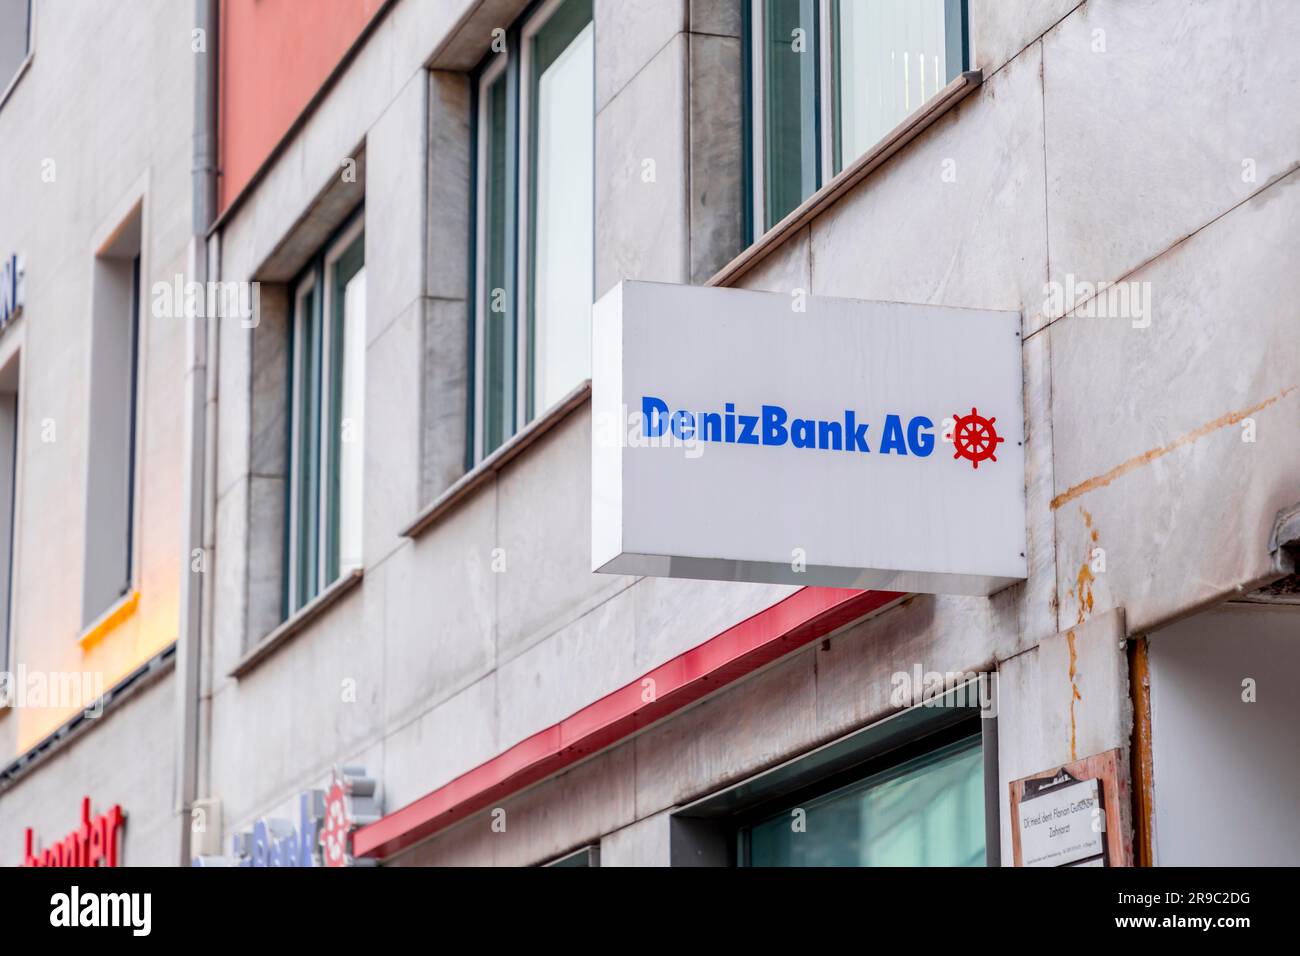 München, Deutschland - 23. DEZEMBER 2021: Münchner Zweigstelle der DenizBank AG, einer international tätigen türkischen Bank mit Hauptsitz in Dubai. Stockfoto